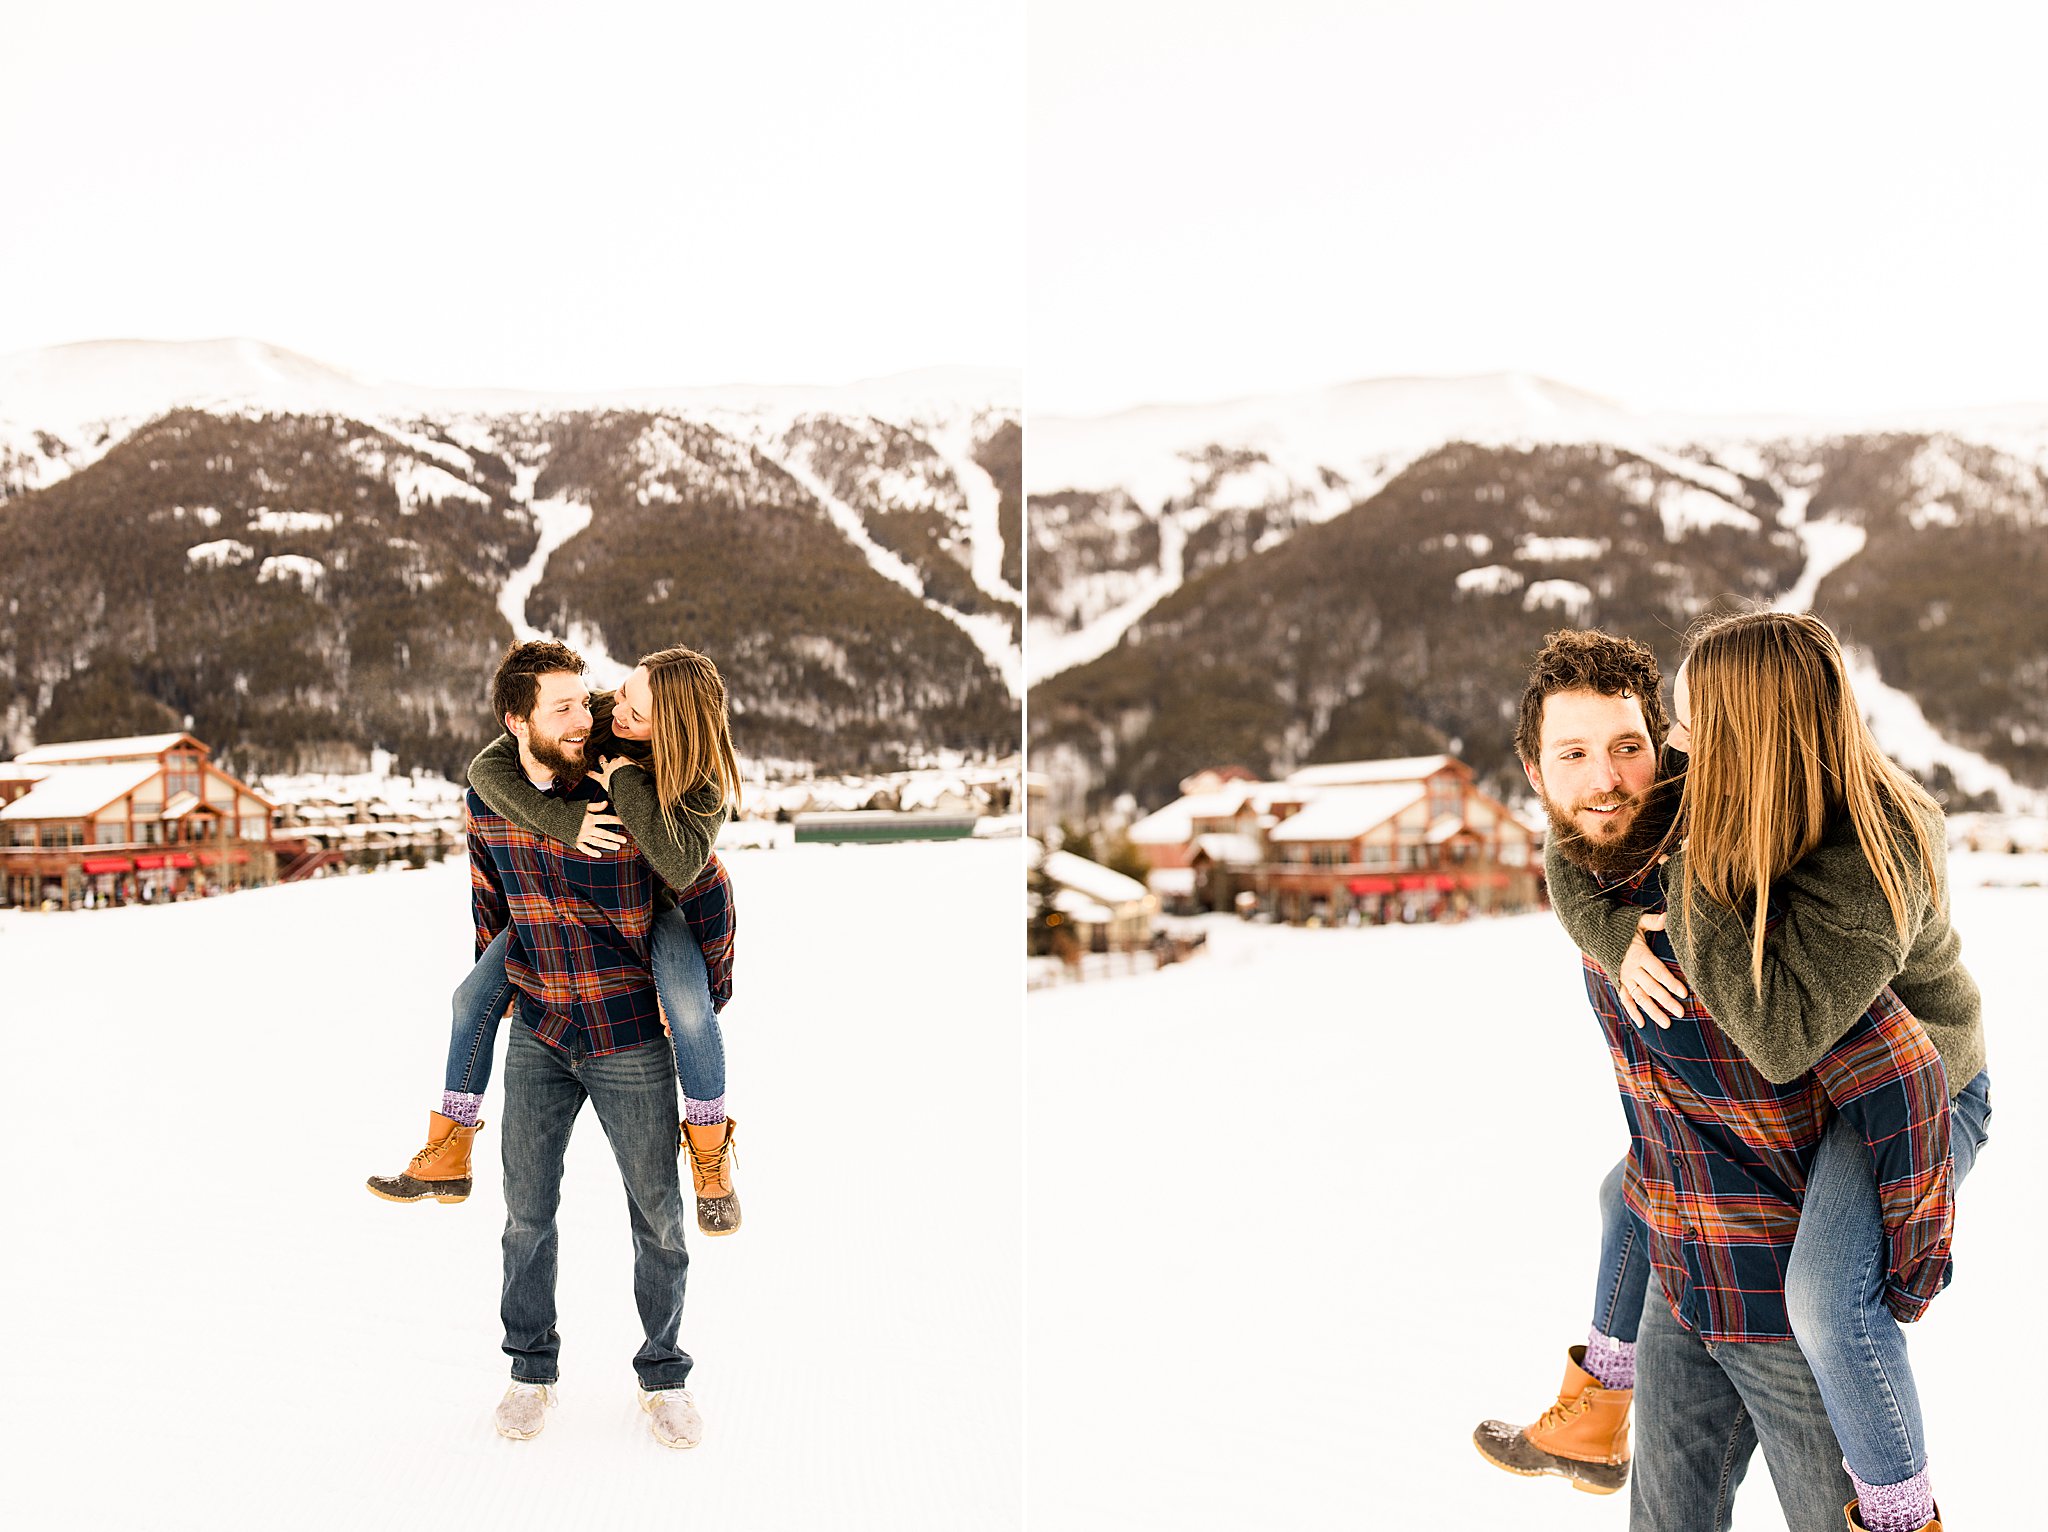 Copper Mountain Couples Photos, Colorado Photographer